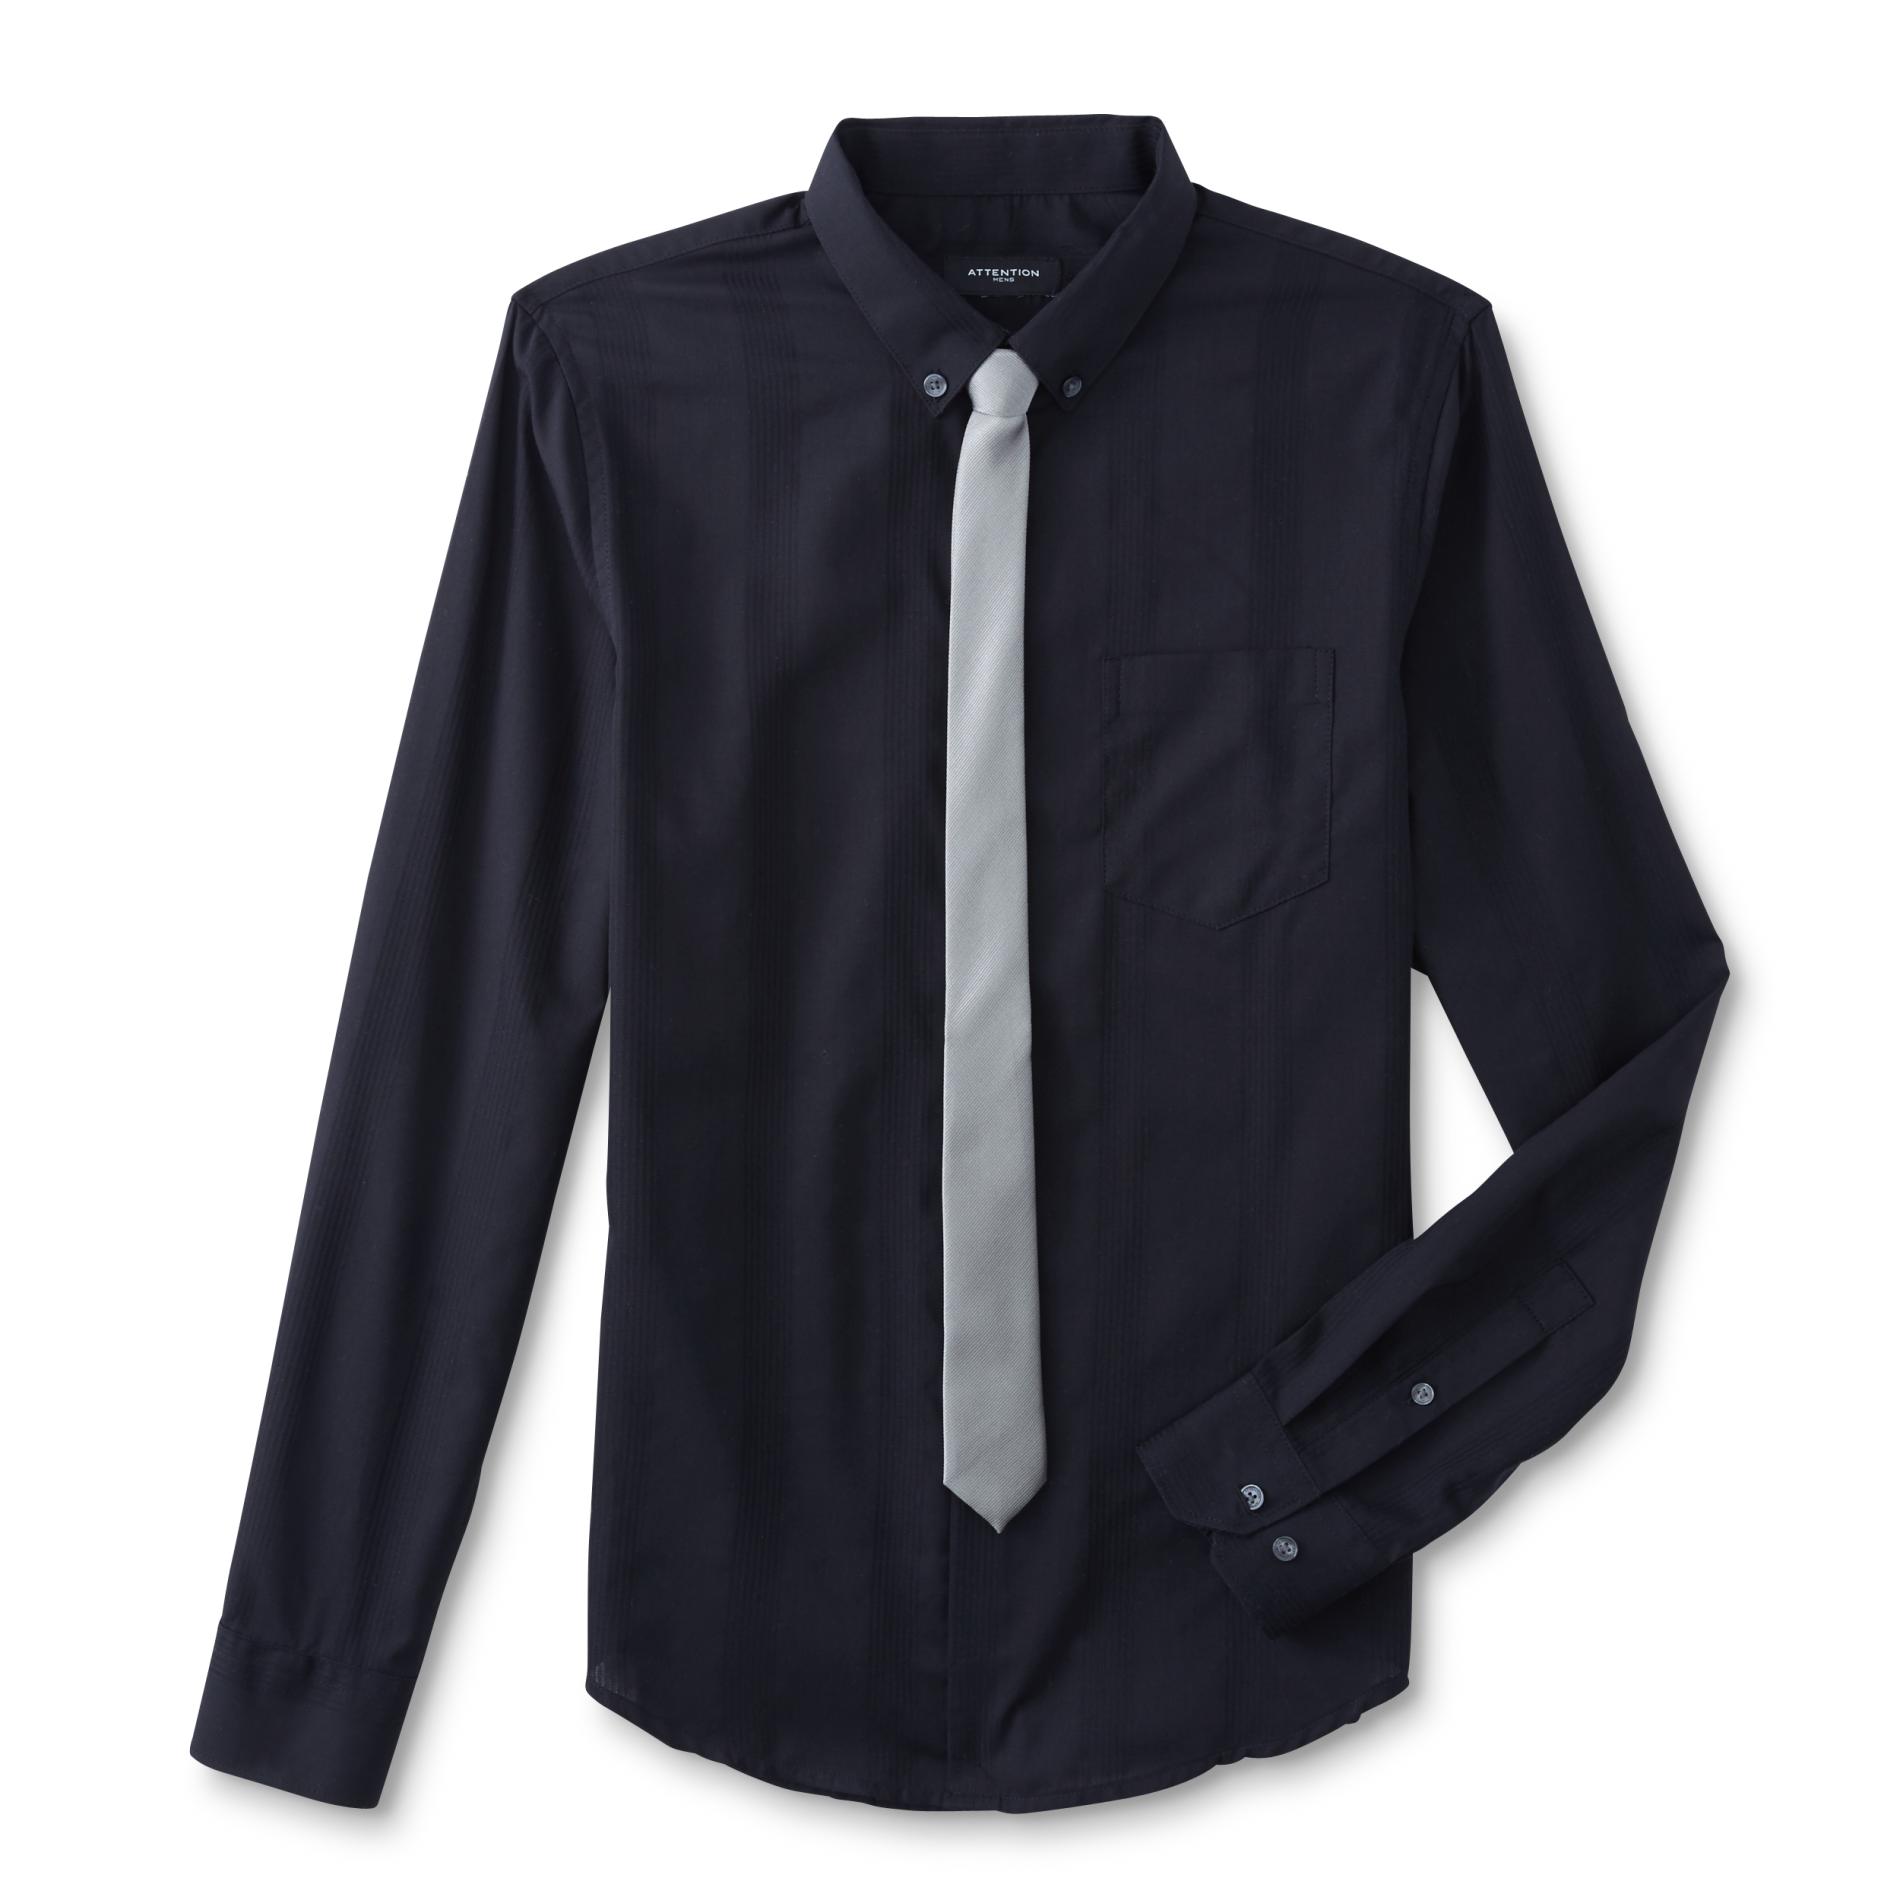 Attention Men's Dress Shirt & Necktie - Herringbone Striped